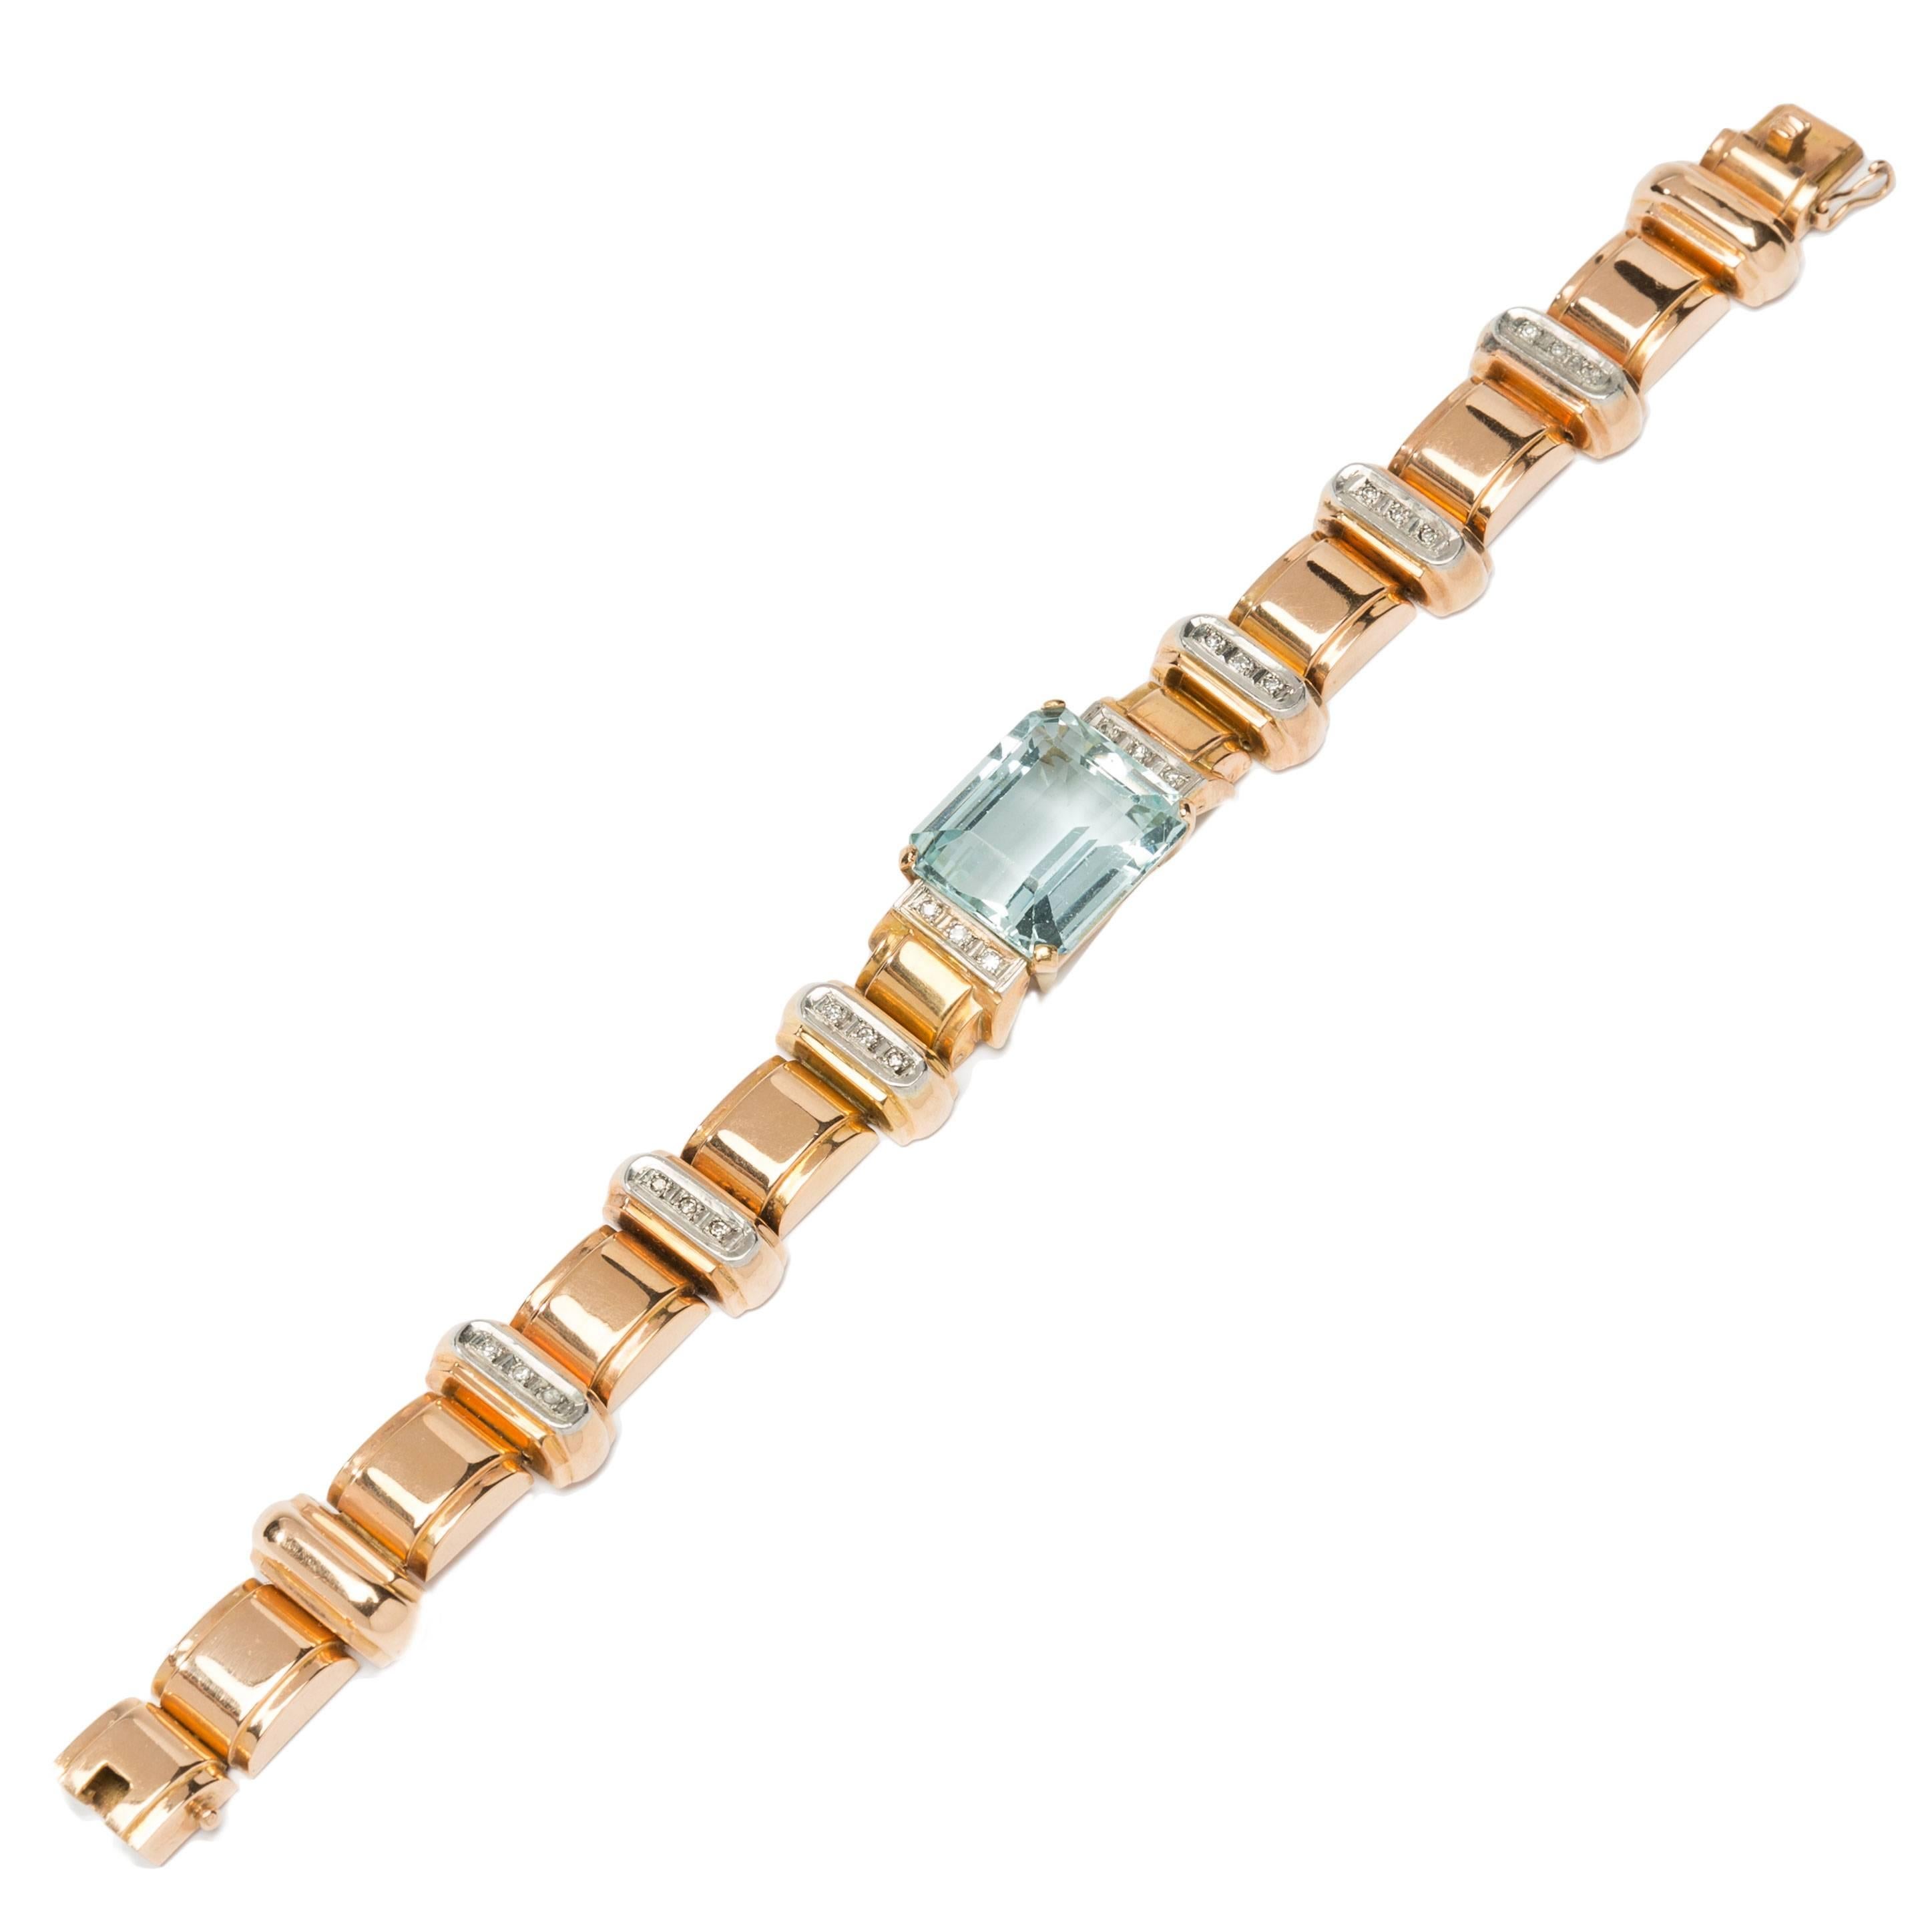 Grand bracelet en or or orné d'aigue-marine et de diamants